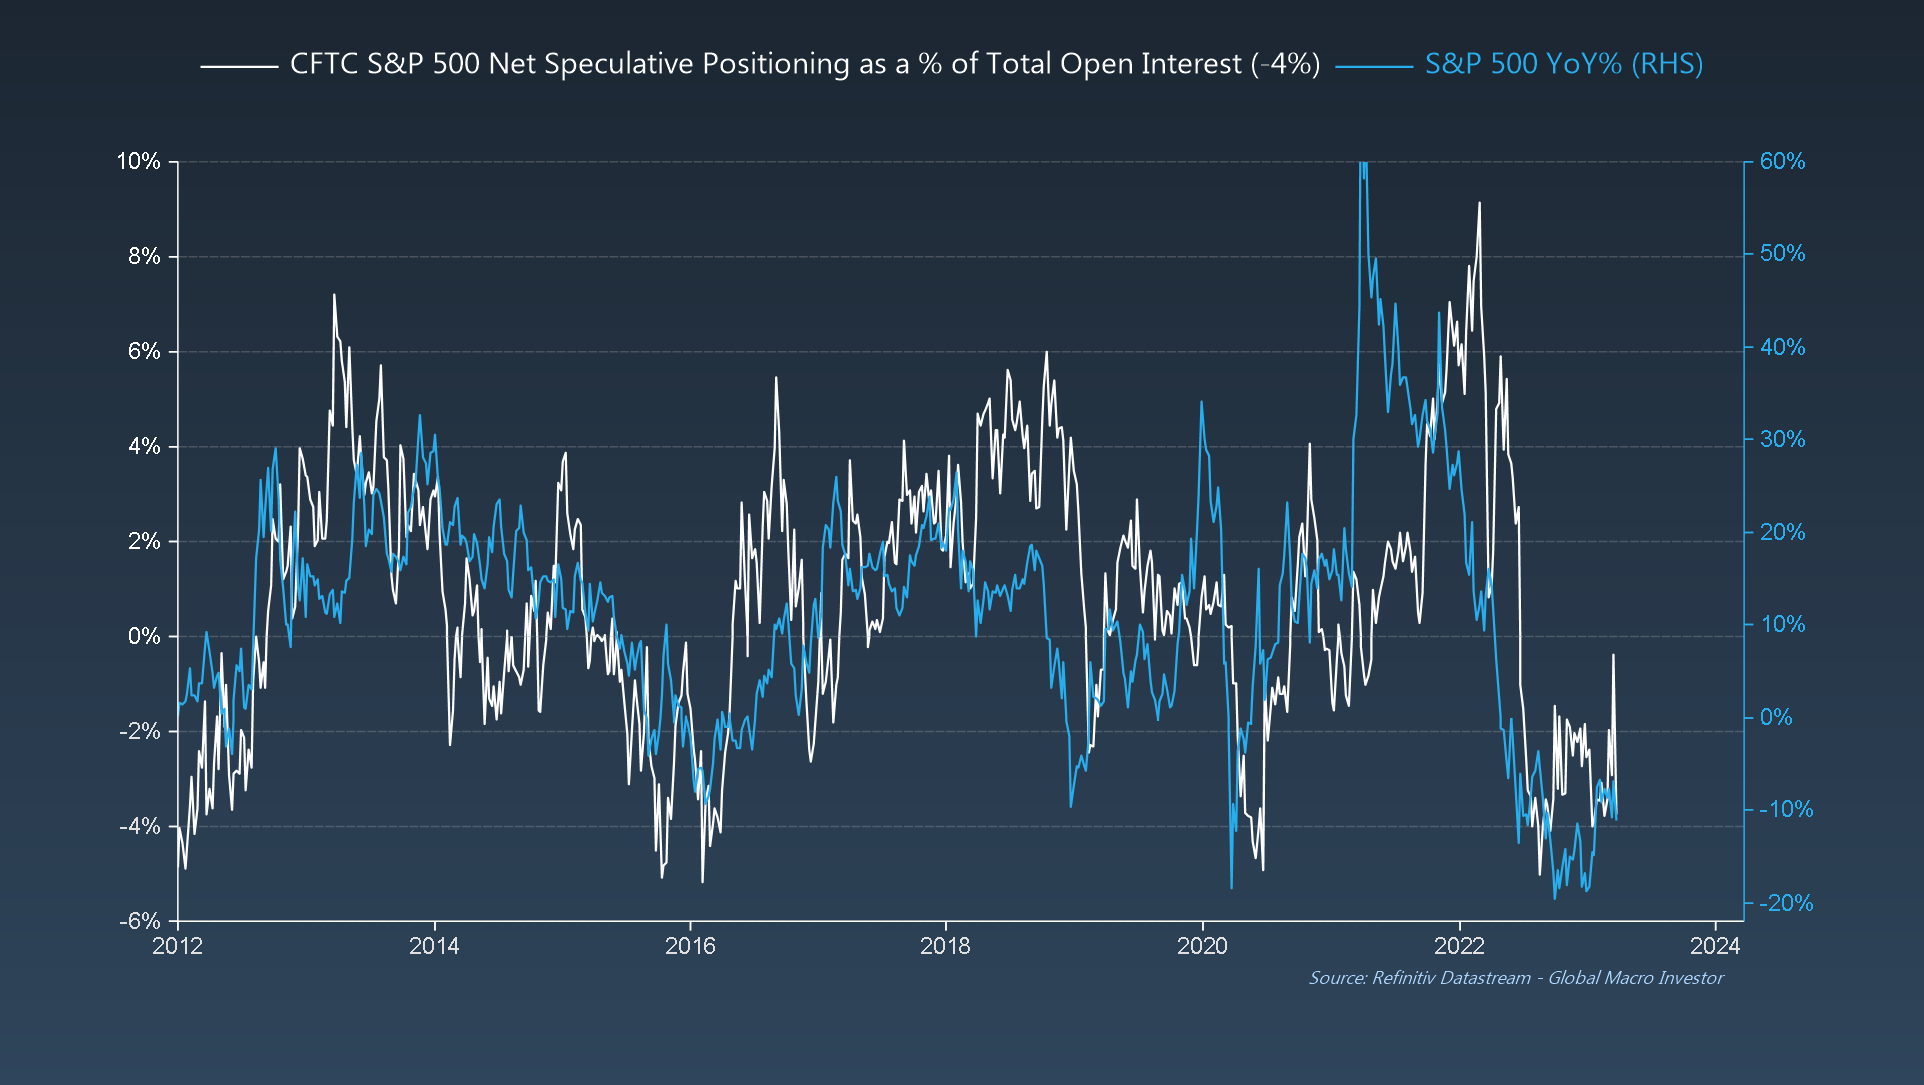 Чистое спекулятивное позиционирование CFTC S&P 500 по сравнению с S&P 500, % г/г